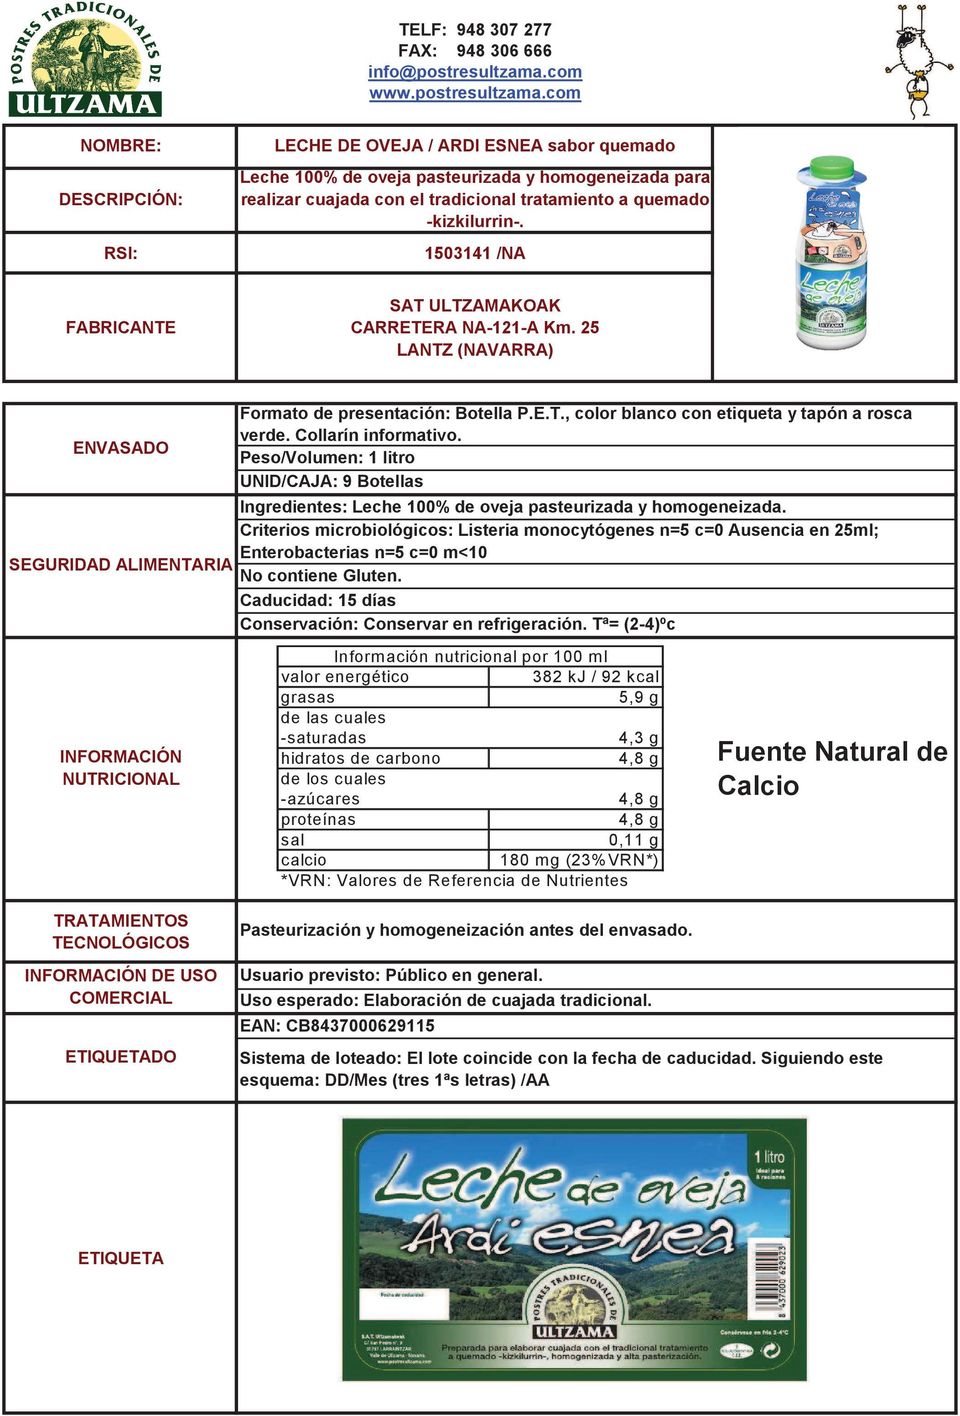 Peso/Volumen: 1 litro UNID/CAJA: 9 Botellas Ingredientes: Leche 100% de oveja pasteurizada y homogeneizada.